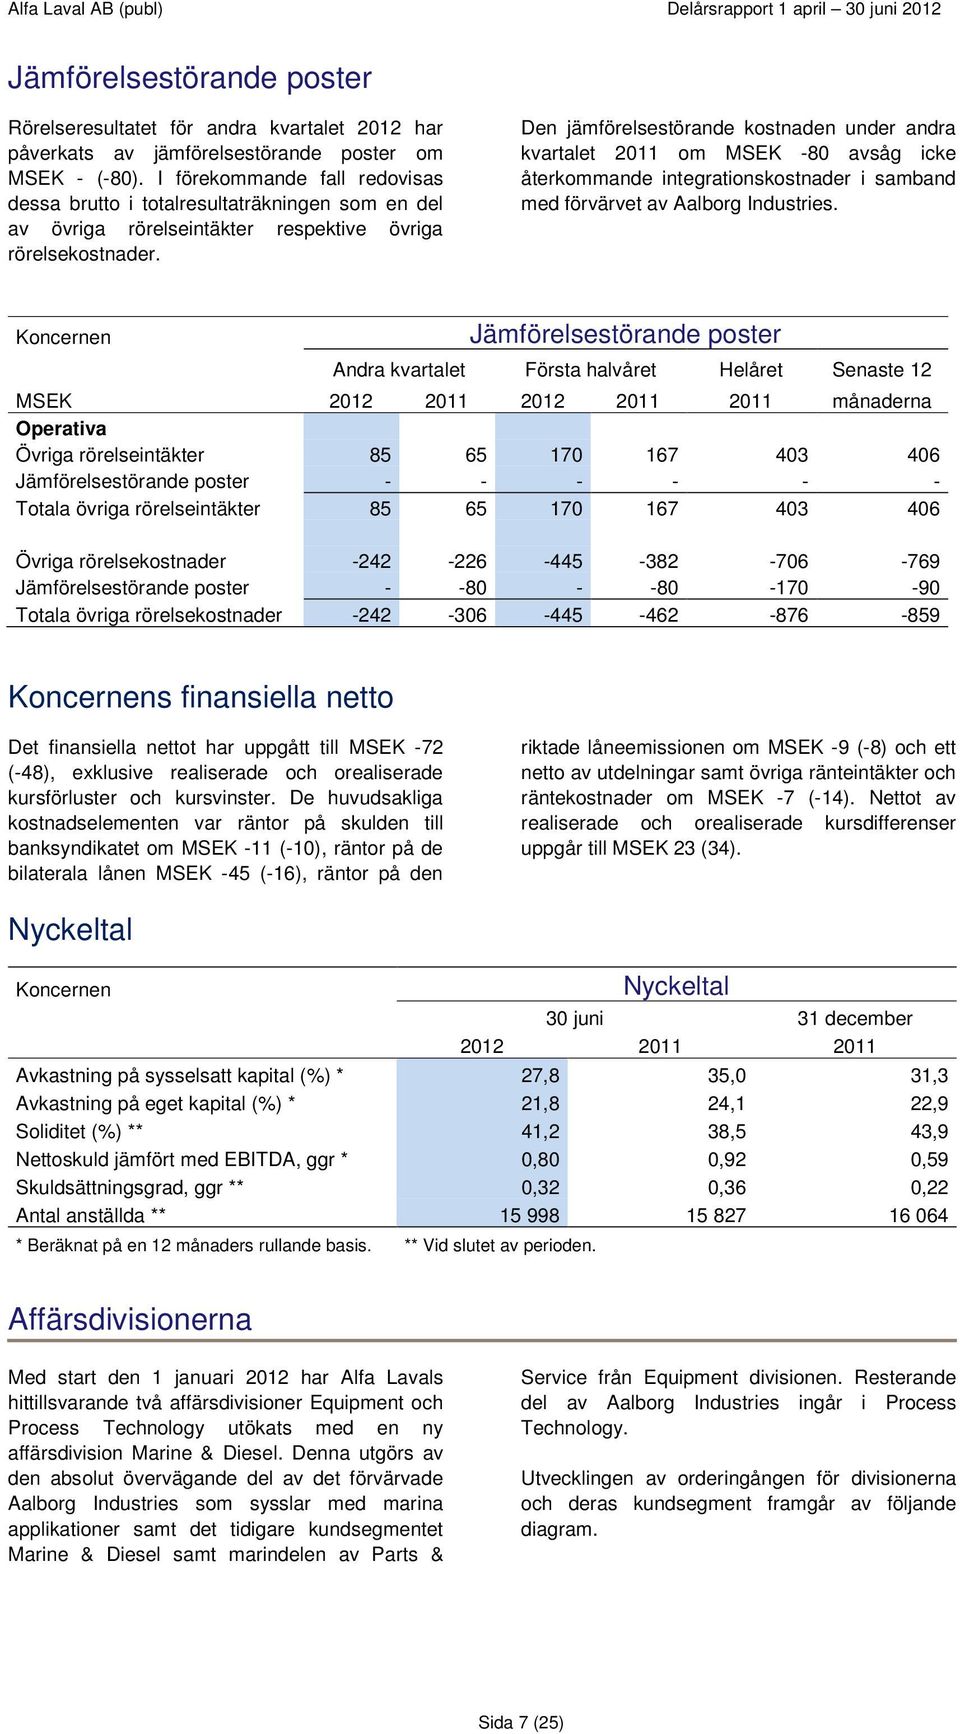 Den jämförelsestörande kostnaden under andra kvartalet 2011 om MSEK -80 avsåg icke återkommande integrationskostnader i samband med förvärvet av Aalborg Industries.